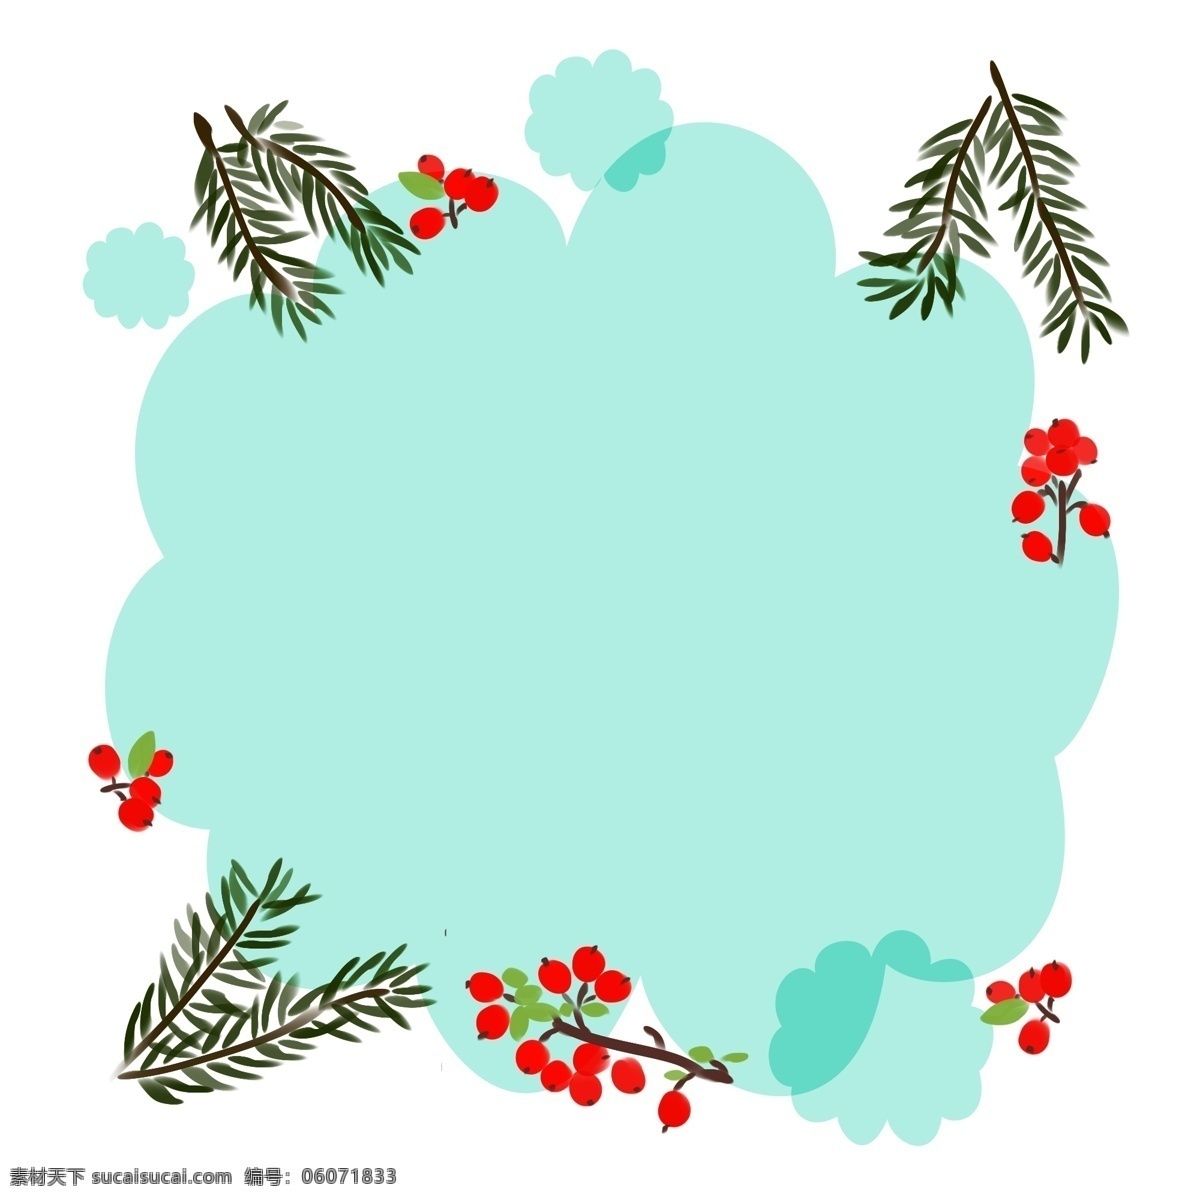 手绘 蓝色 圣诞 边框 植物边框 花形边框 手绘边框 植物 松树枝 红色果实 圣诞边框 插画